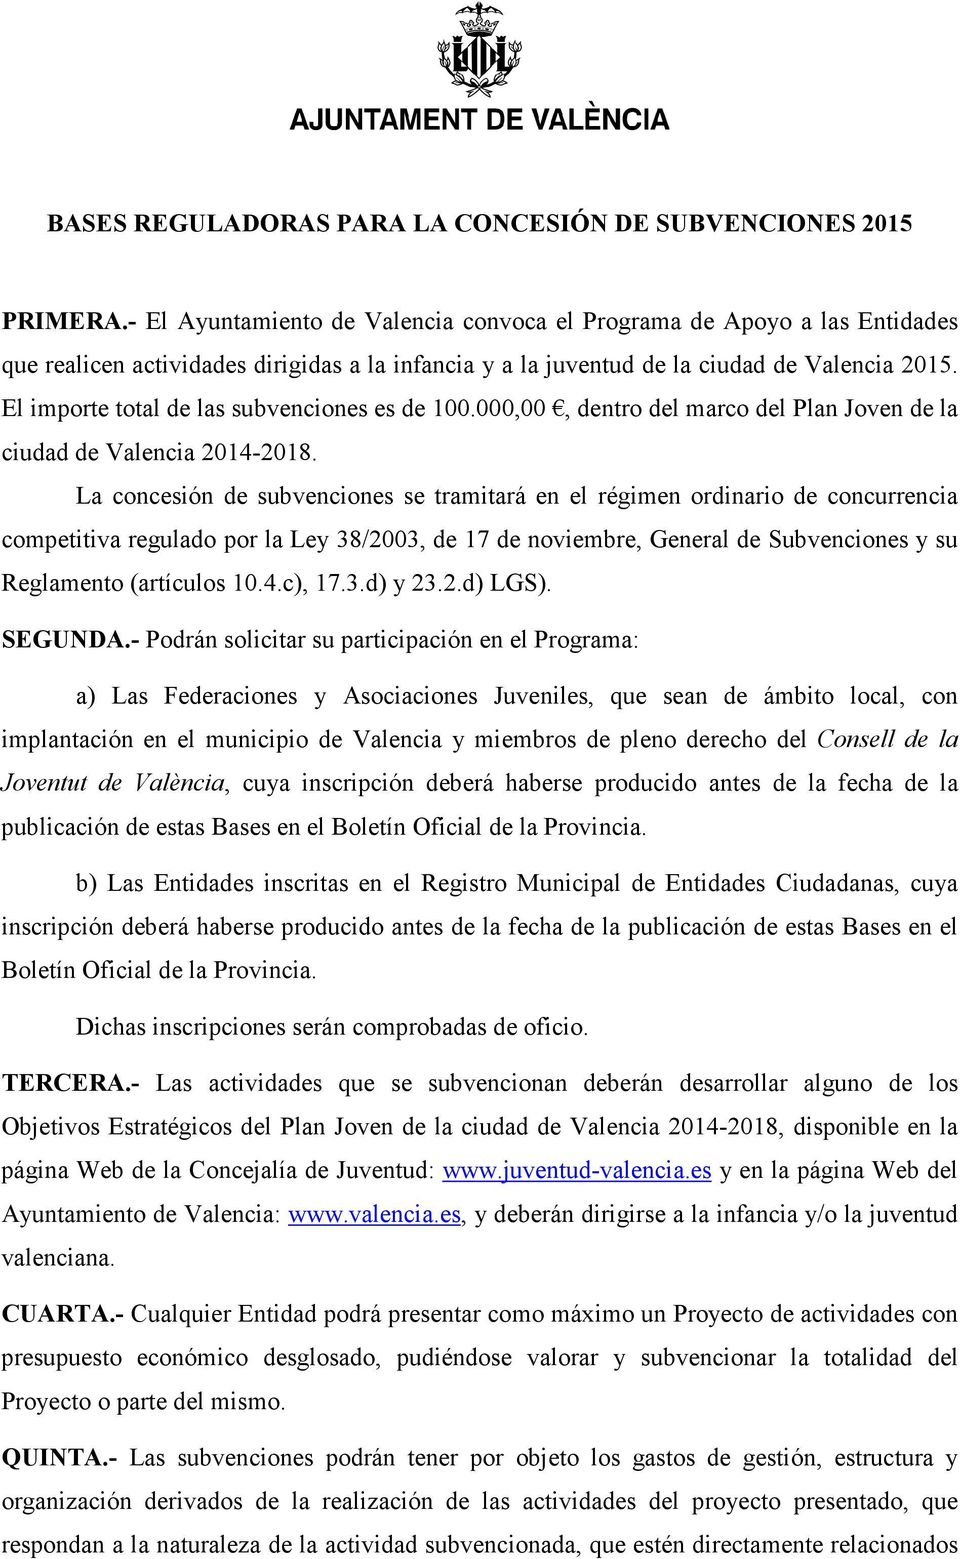 El importe total de las subvenciones es de 100.000,00, dentro del marco del Plan Joven de la ciudad de Valencia 2014-2018.